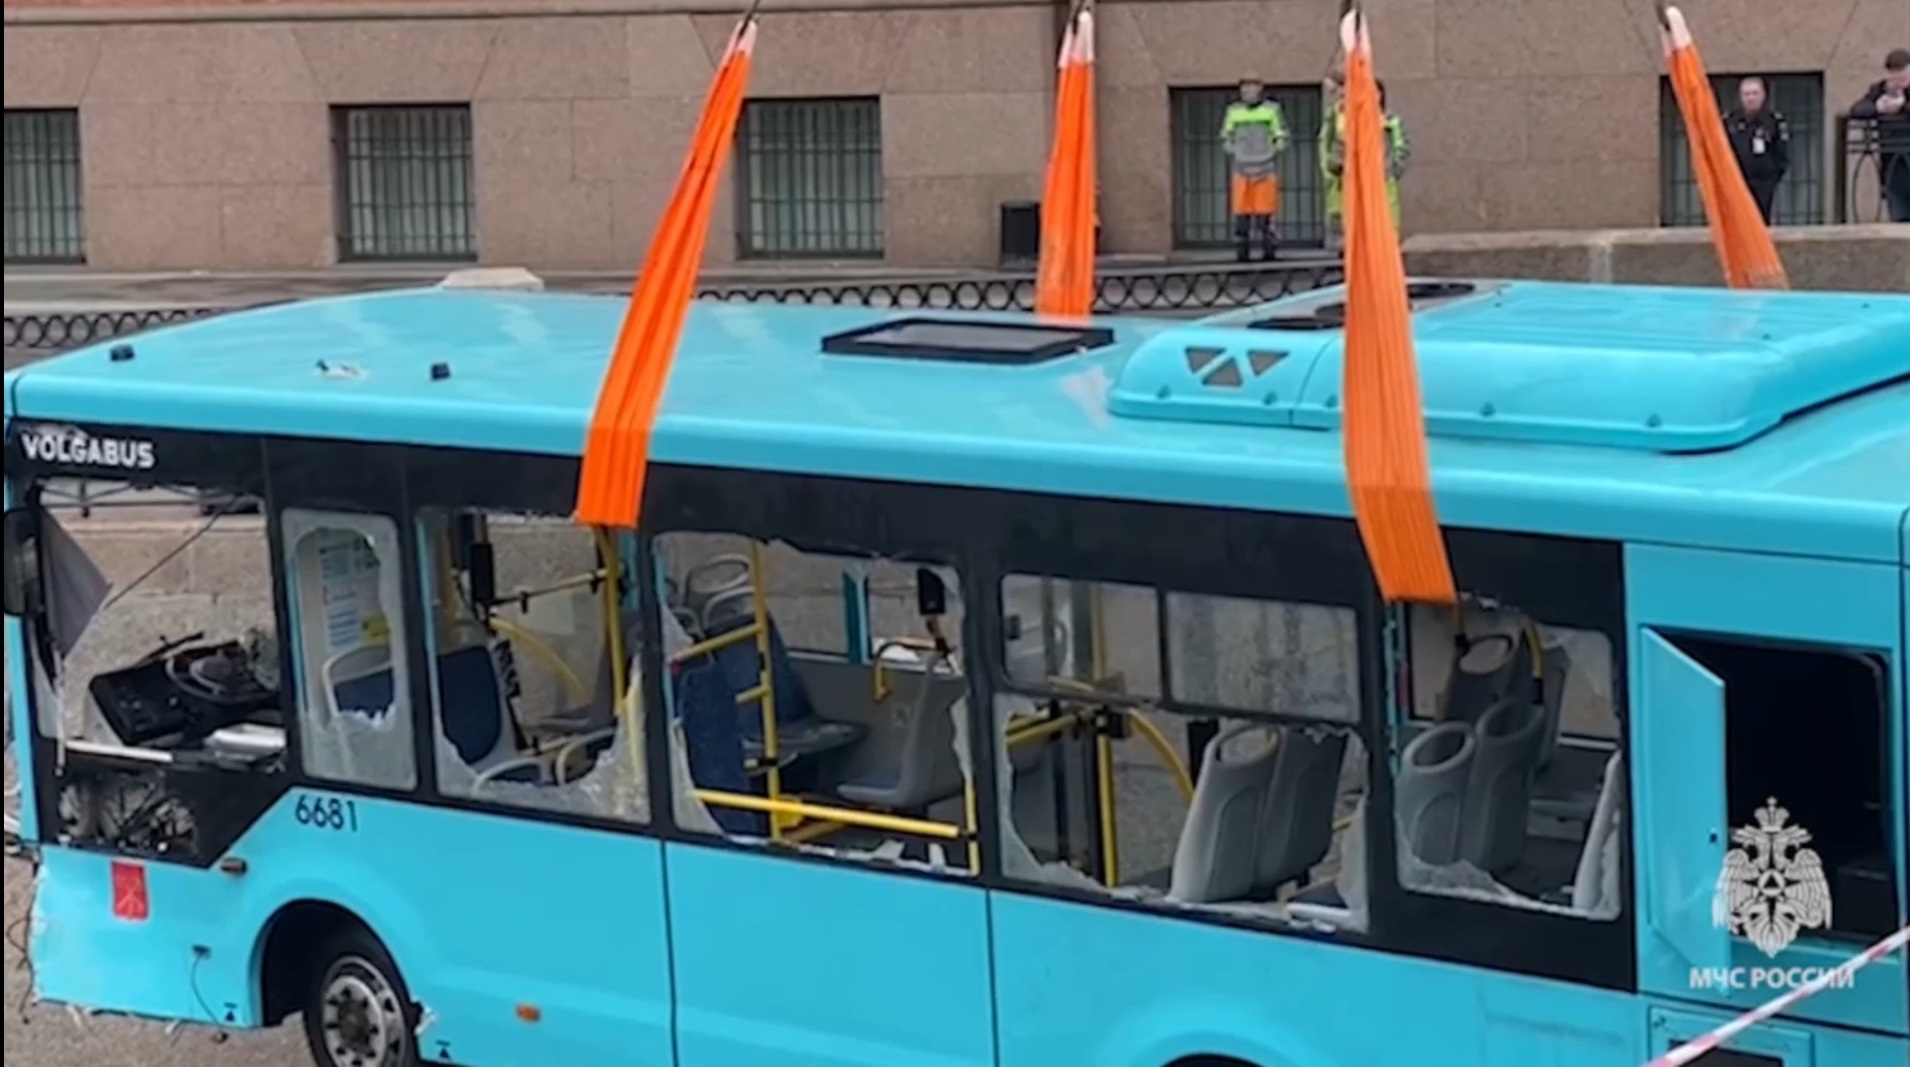 Упавшим в реку в Санкт-Петербурге автобусом оказался Волгабас